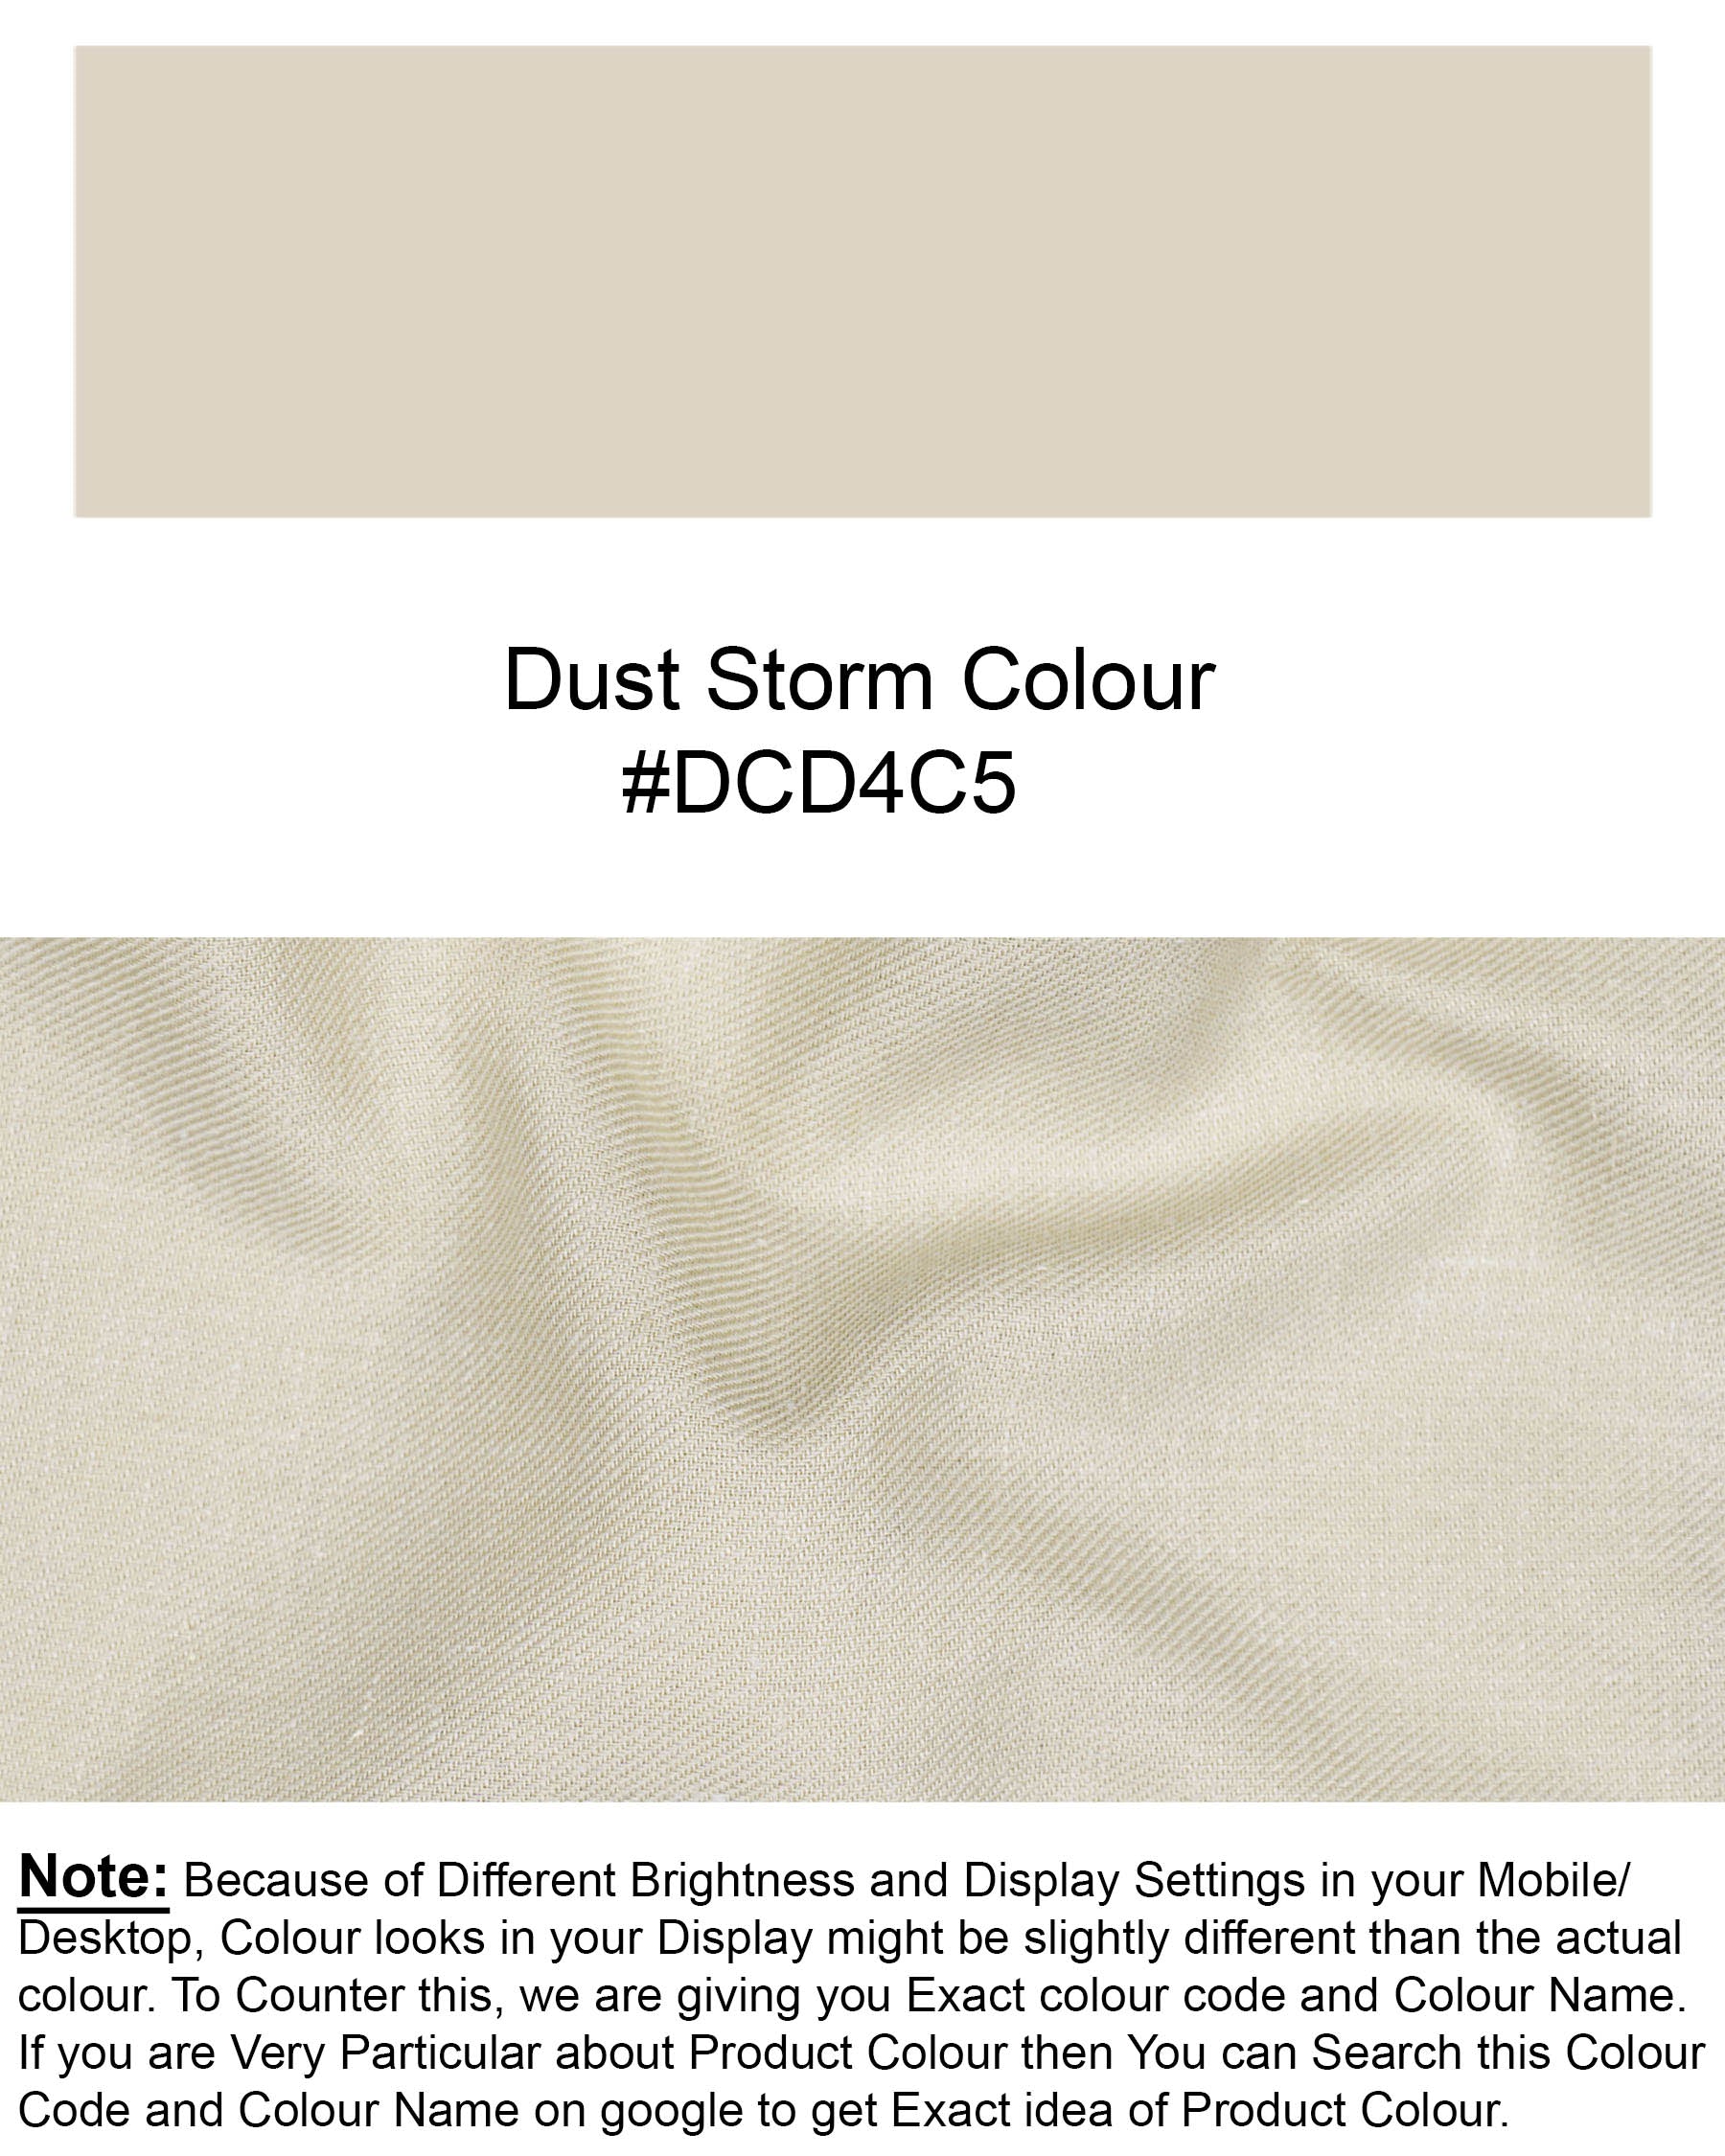 Dust Storm Brown Luxurious Linen Shirt 7623-BD-38, 7623-BD-H-38, 7623-BD-39,7623-BD-H-39, 7623-BD-40, 7623-BD-H-40, 7623-BD-42, 7623-BD-H-42, 7623-BD-44, 7623-BD-H-44, 7623-BD-46, 7623-BD-H-46, 7623-BD-48, 7623-BD-H-48, 7623-BD-50, 7623-BD-H-50, 7623-BD-52, 7623-BD-H-52